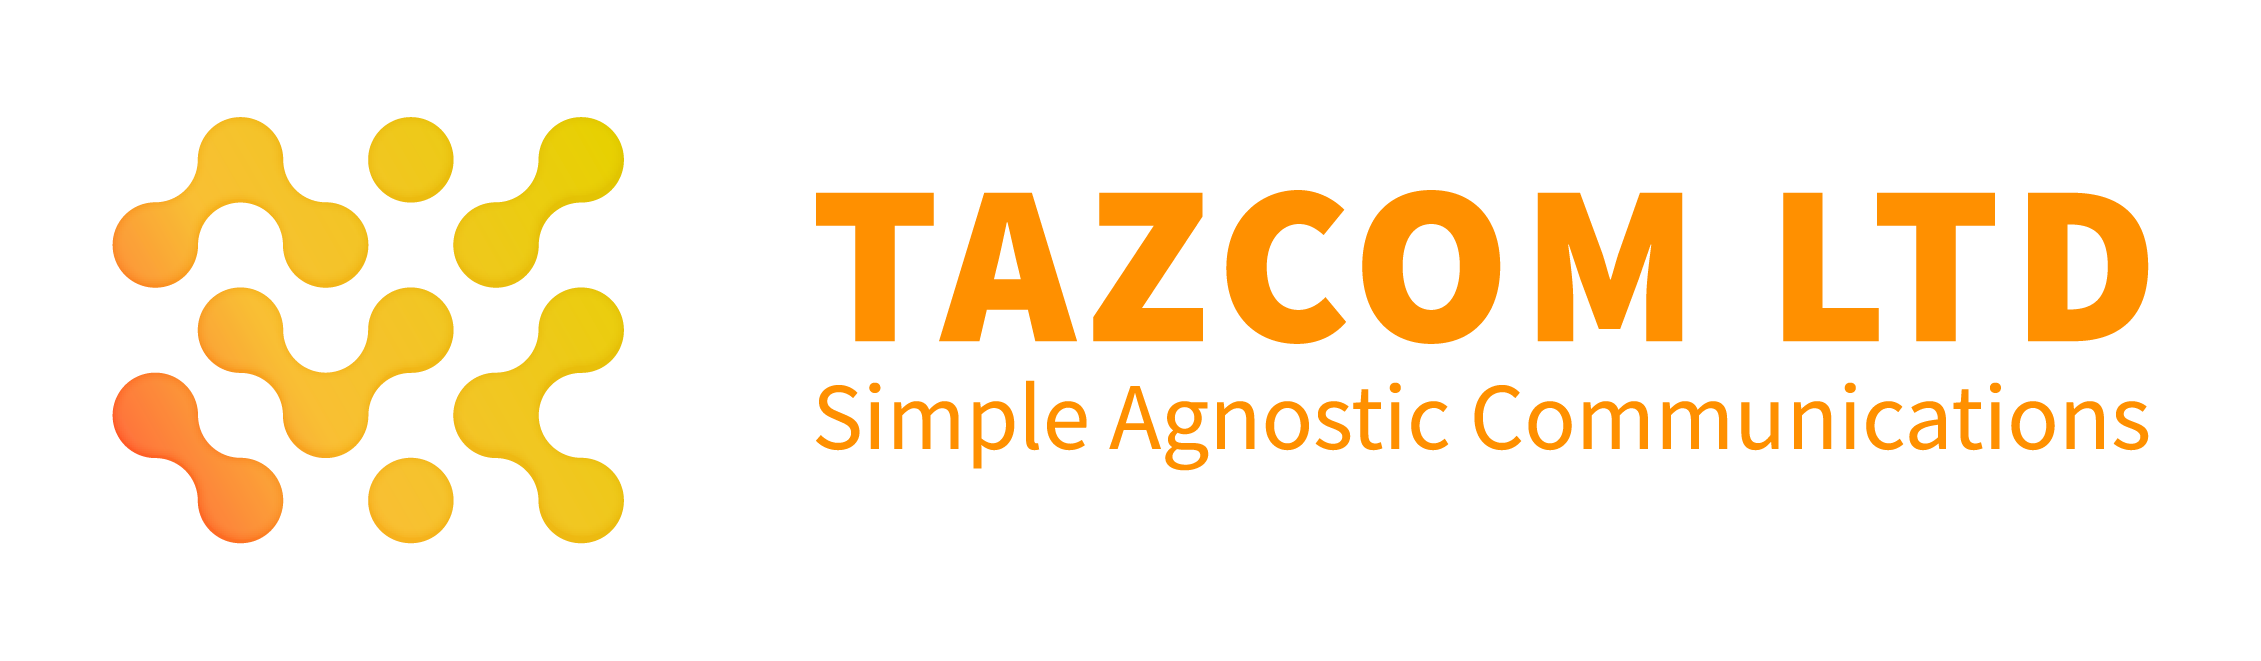 Tazcom Ltd